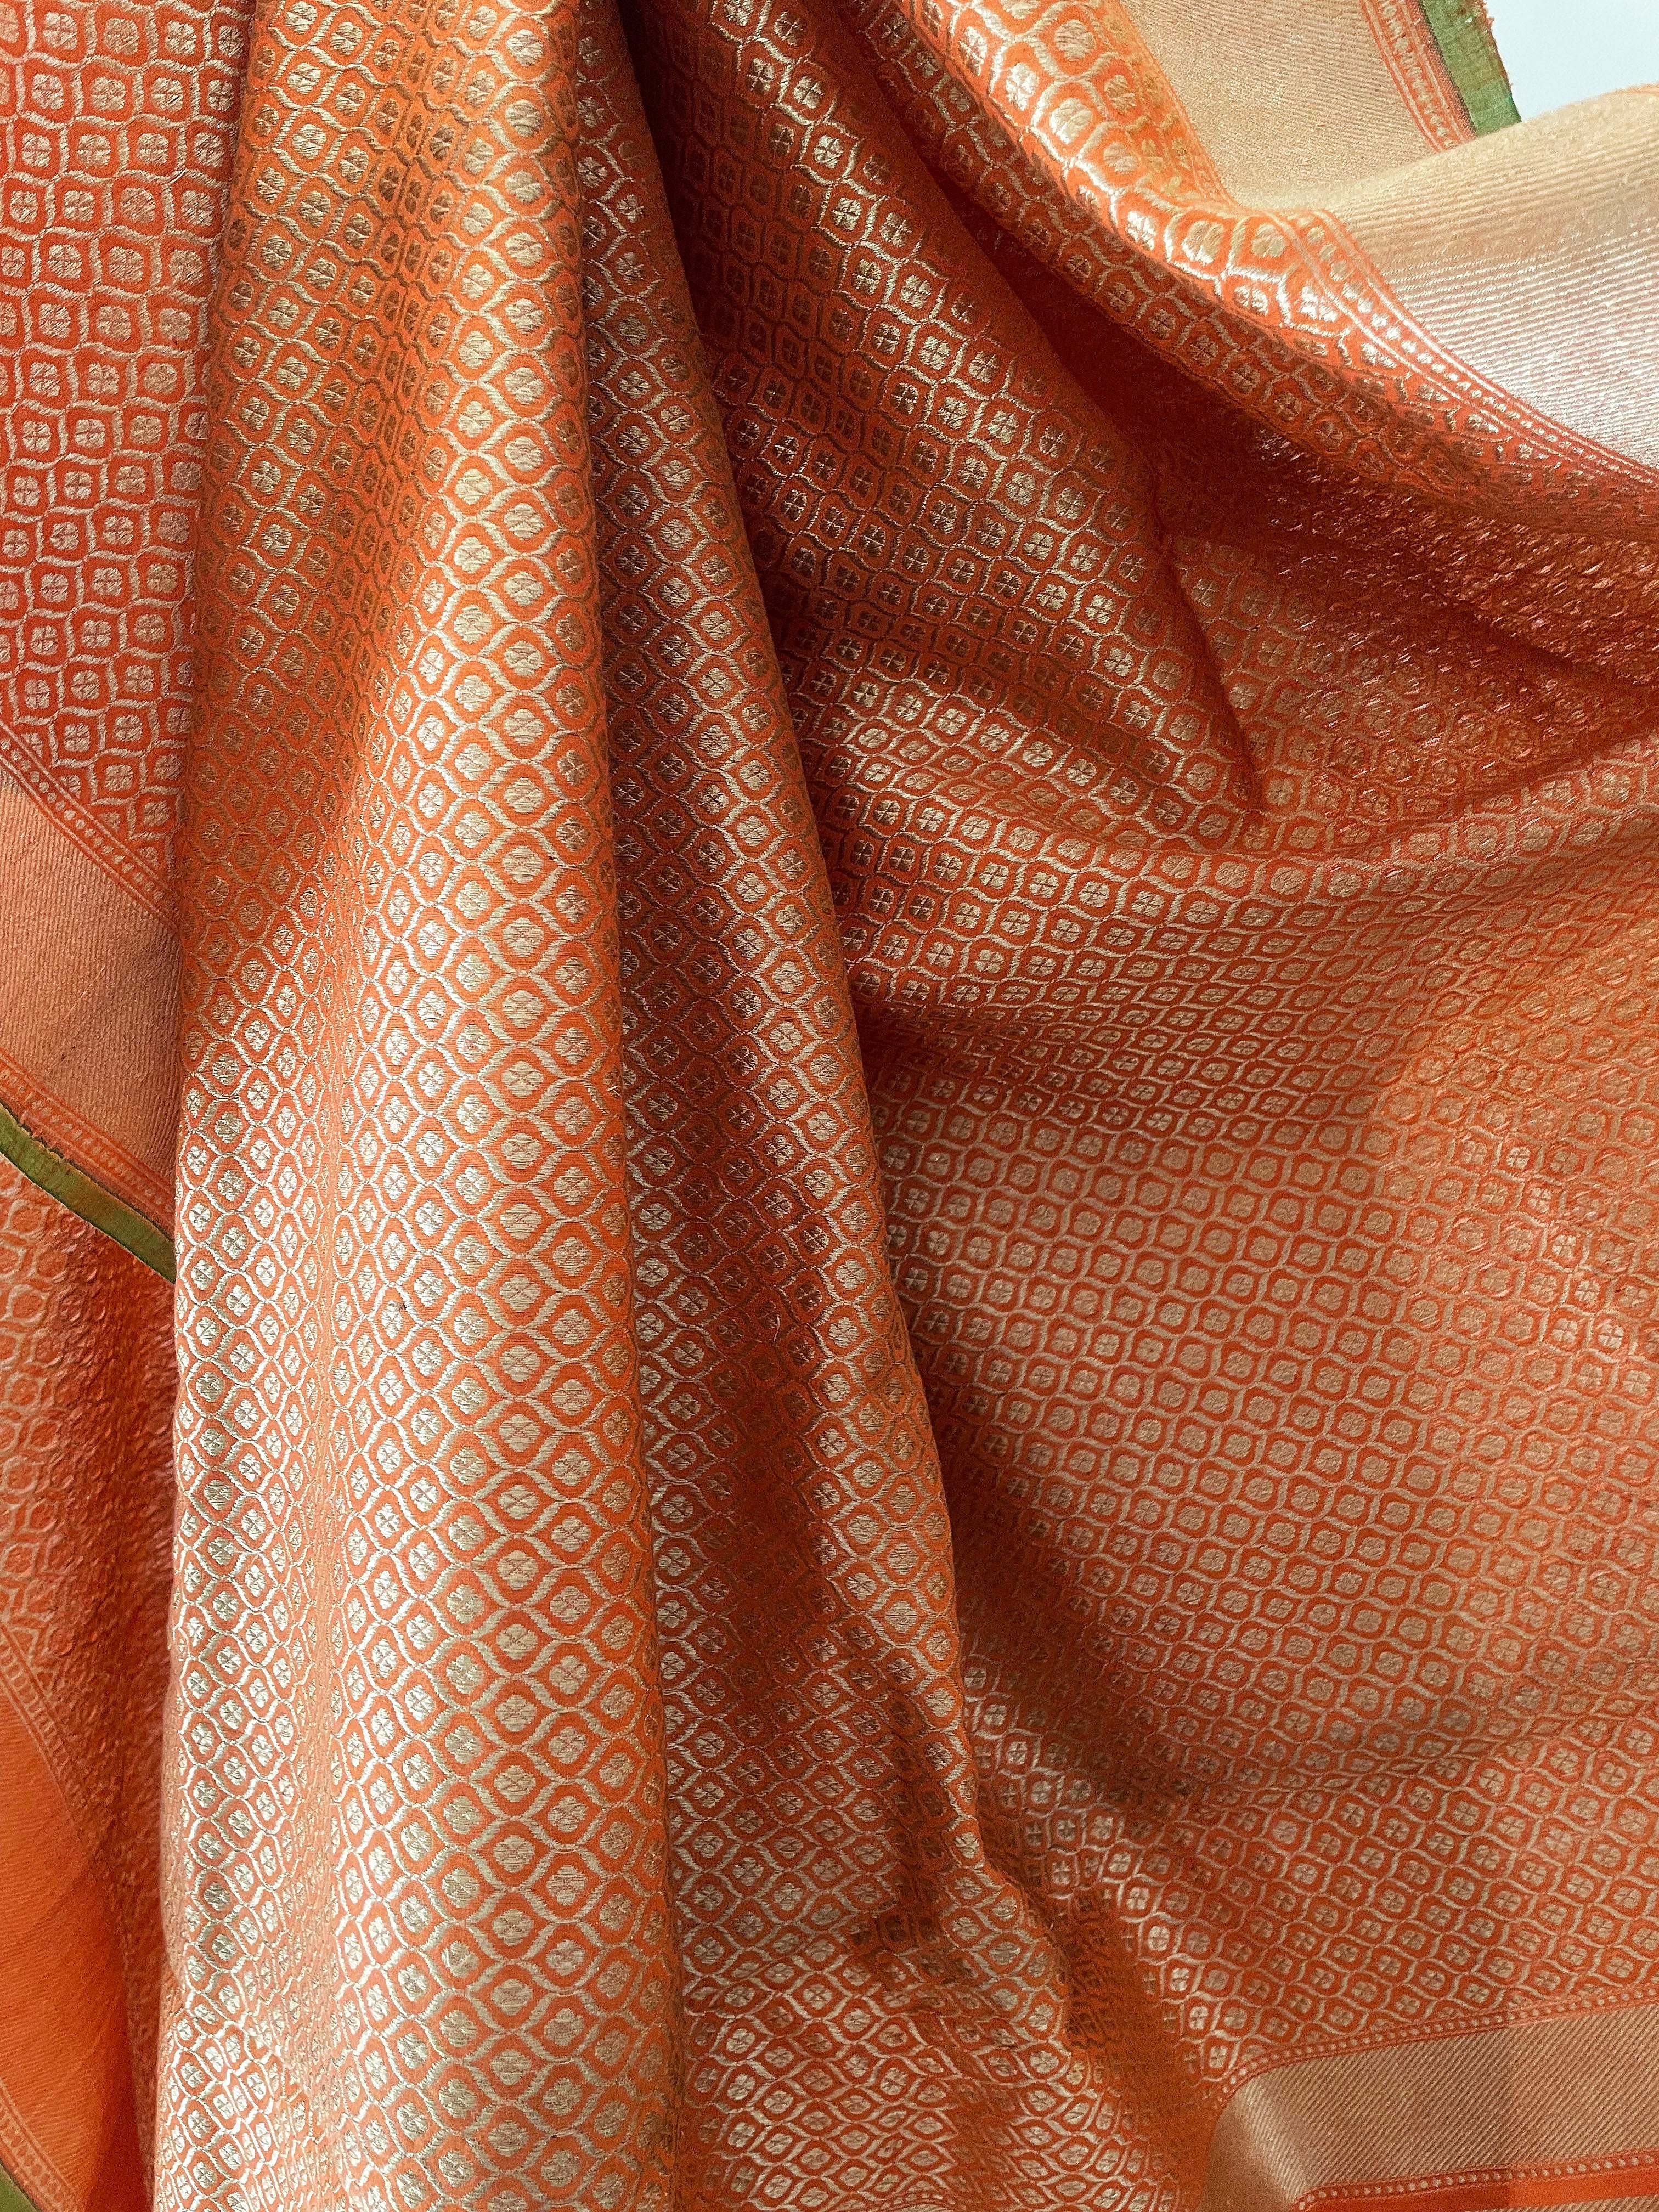 Poly Silk Sarees | Poly Silk Plain & Printed Saris Online